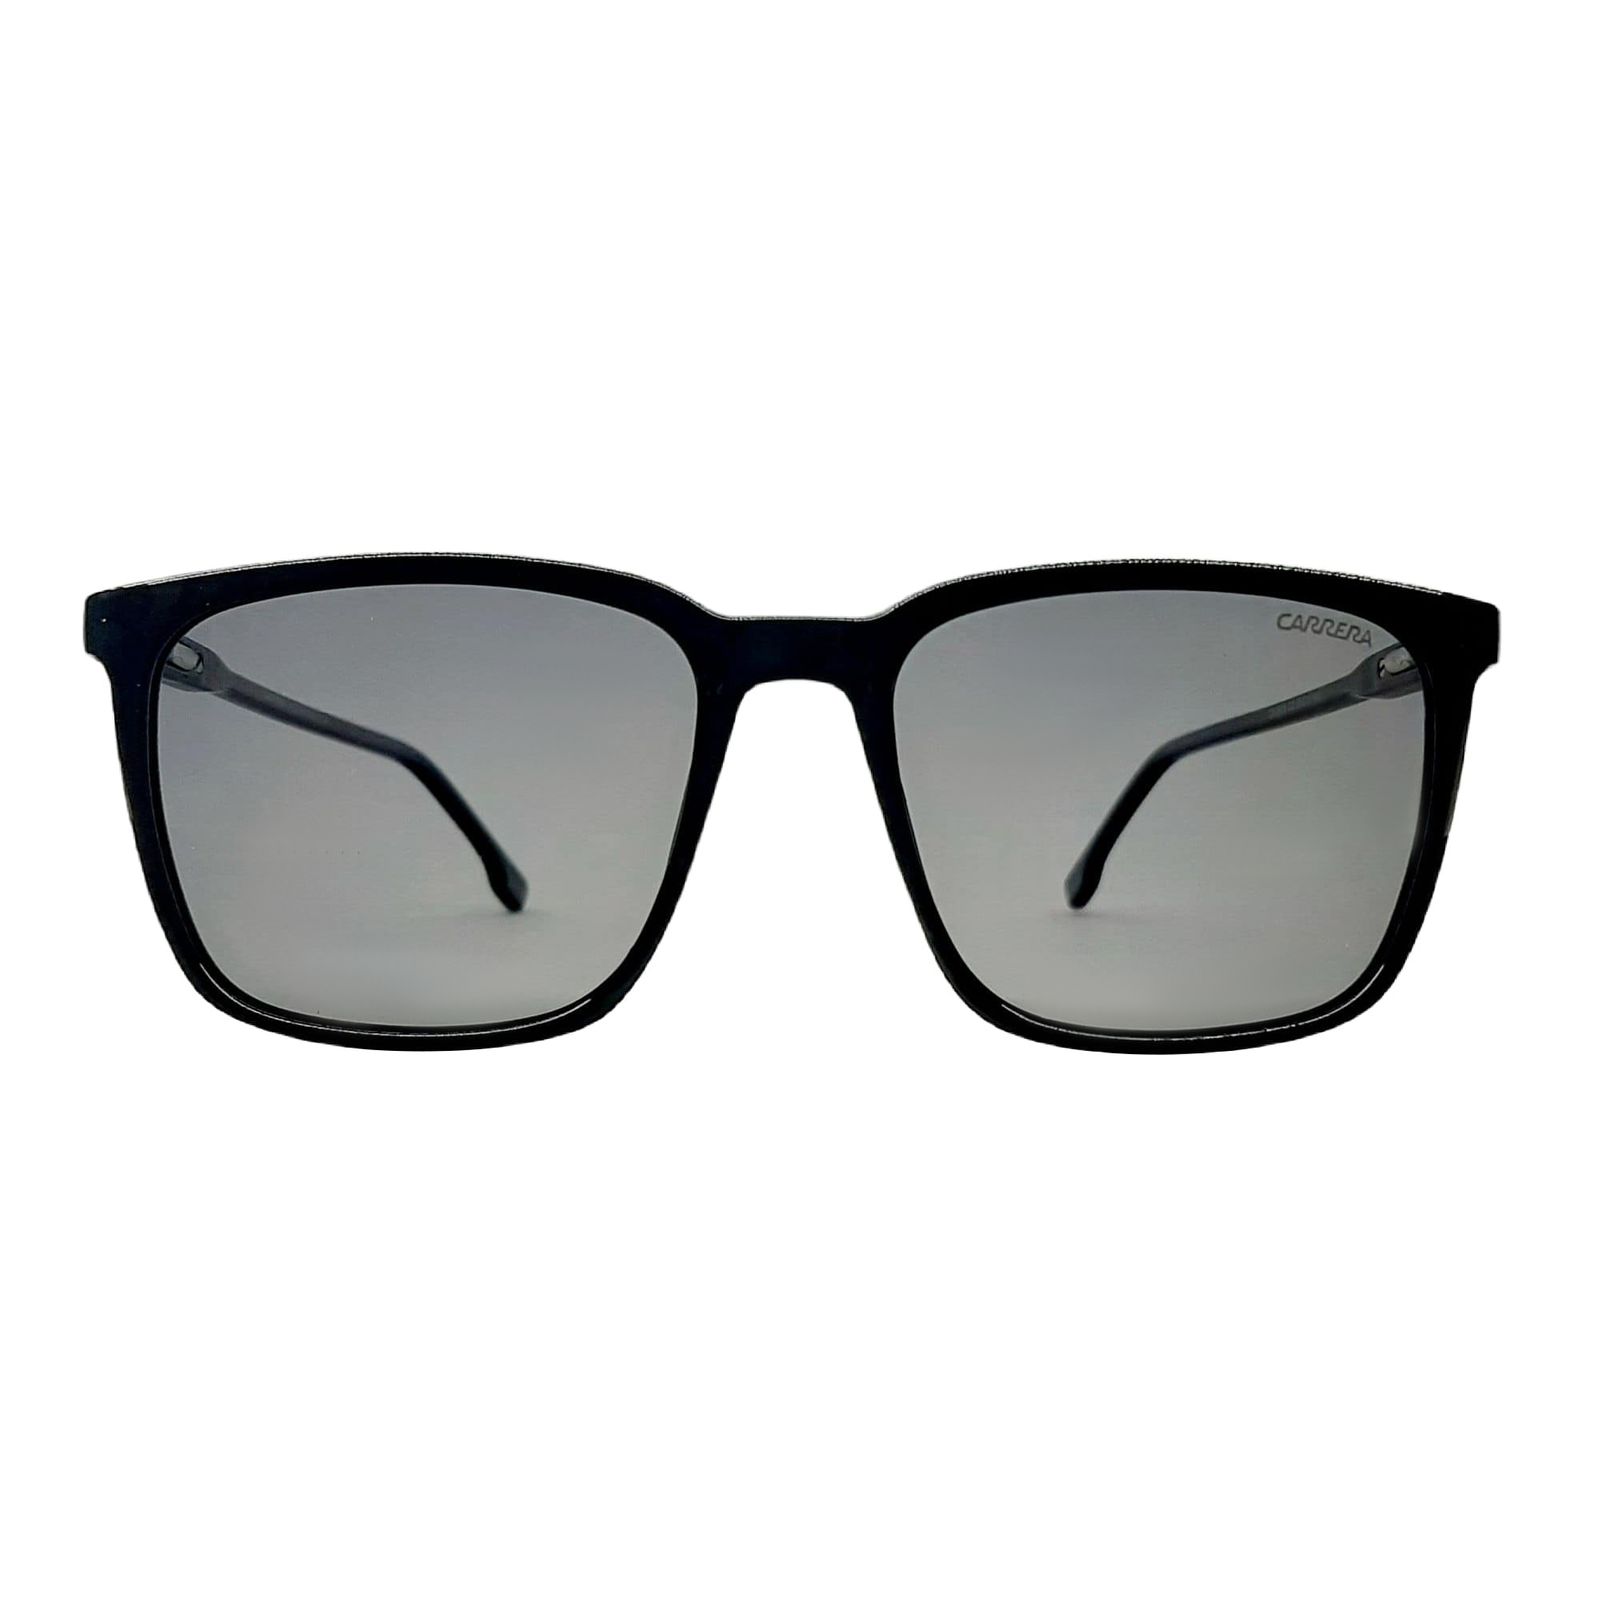 عینک آفتابی کررا مدل CA259Sc2